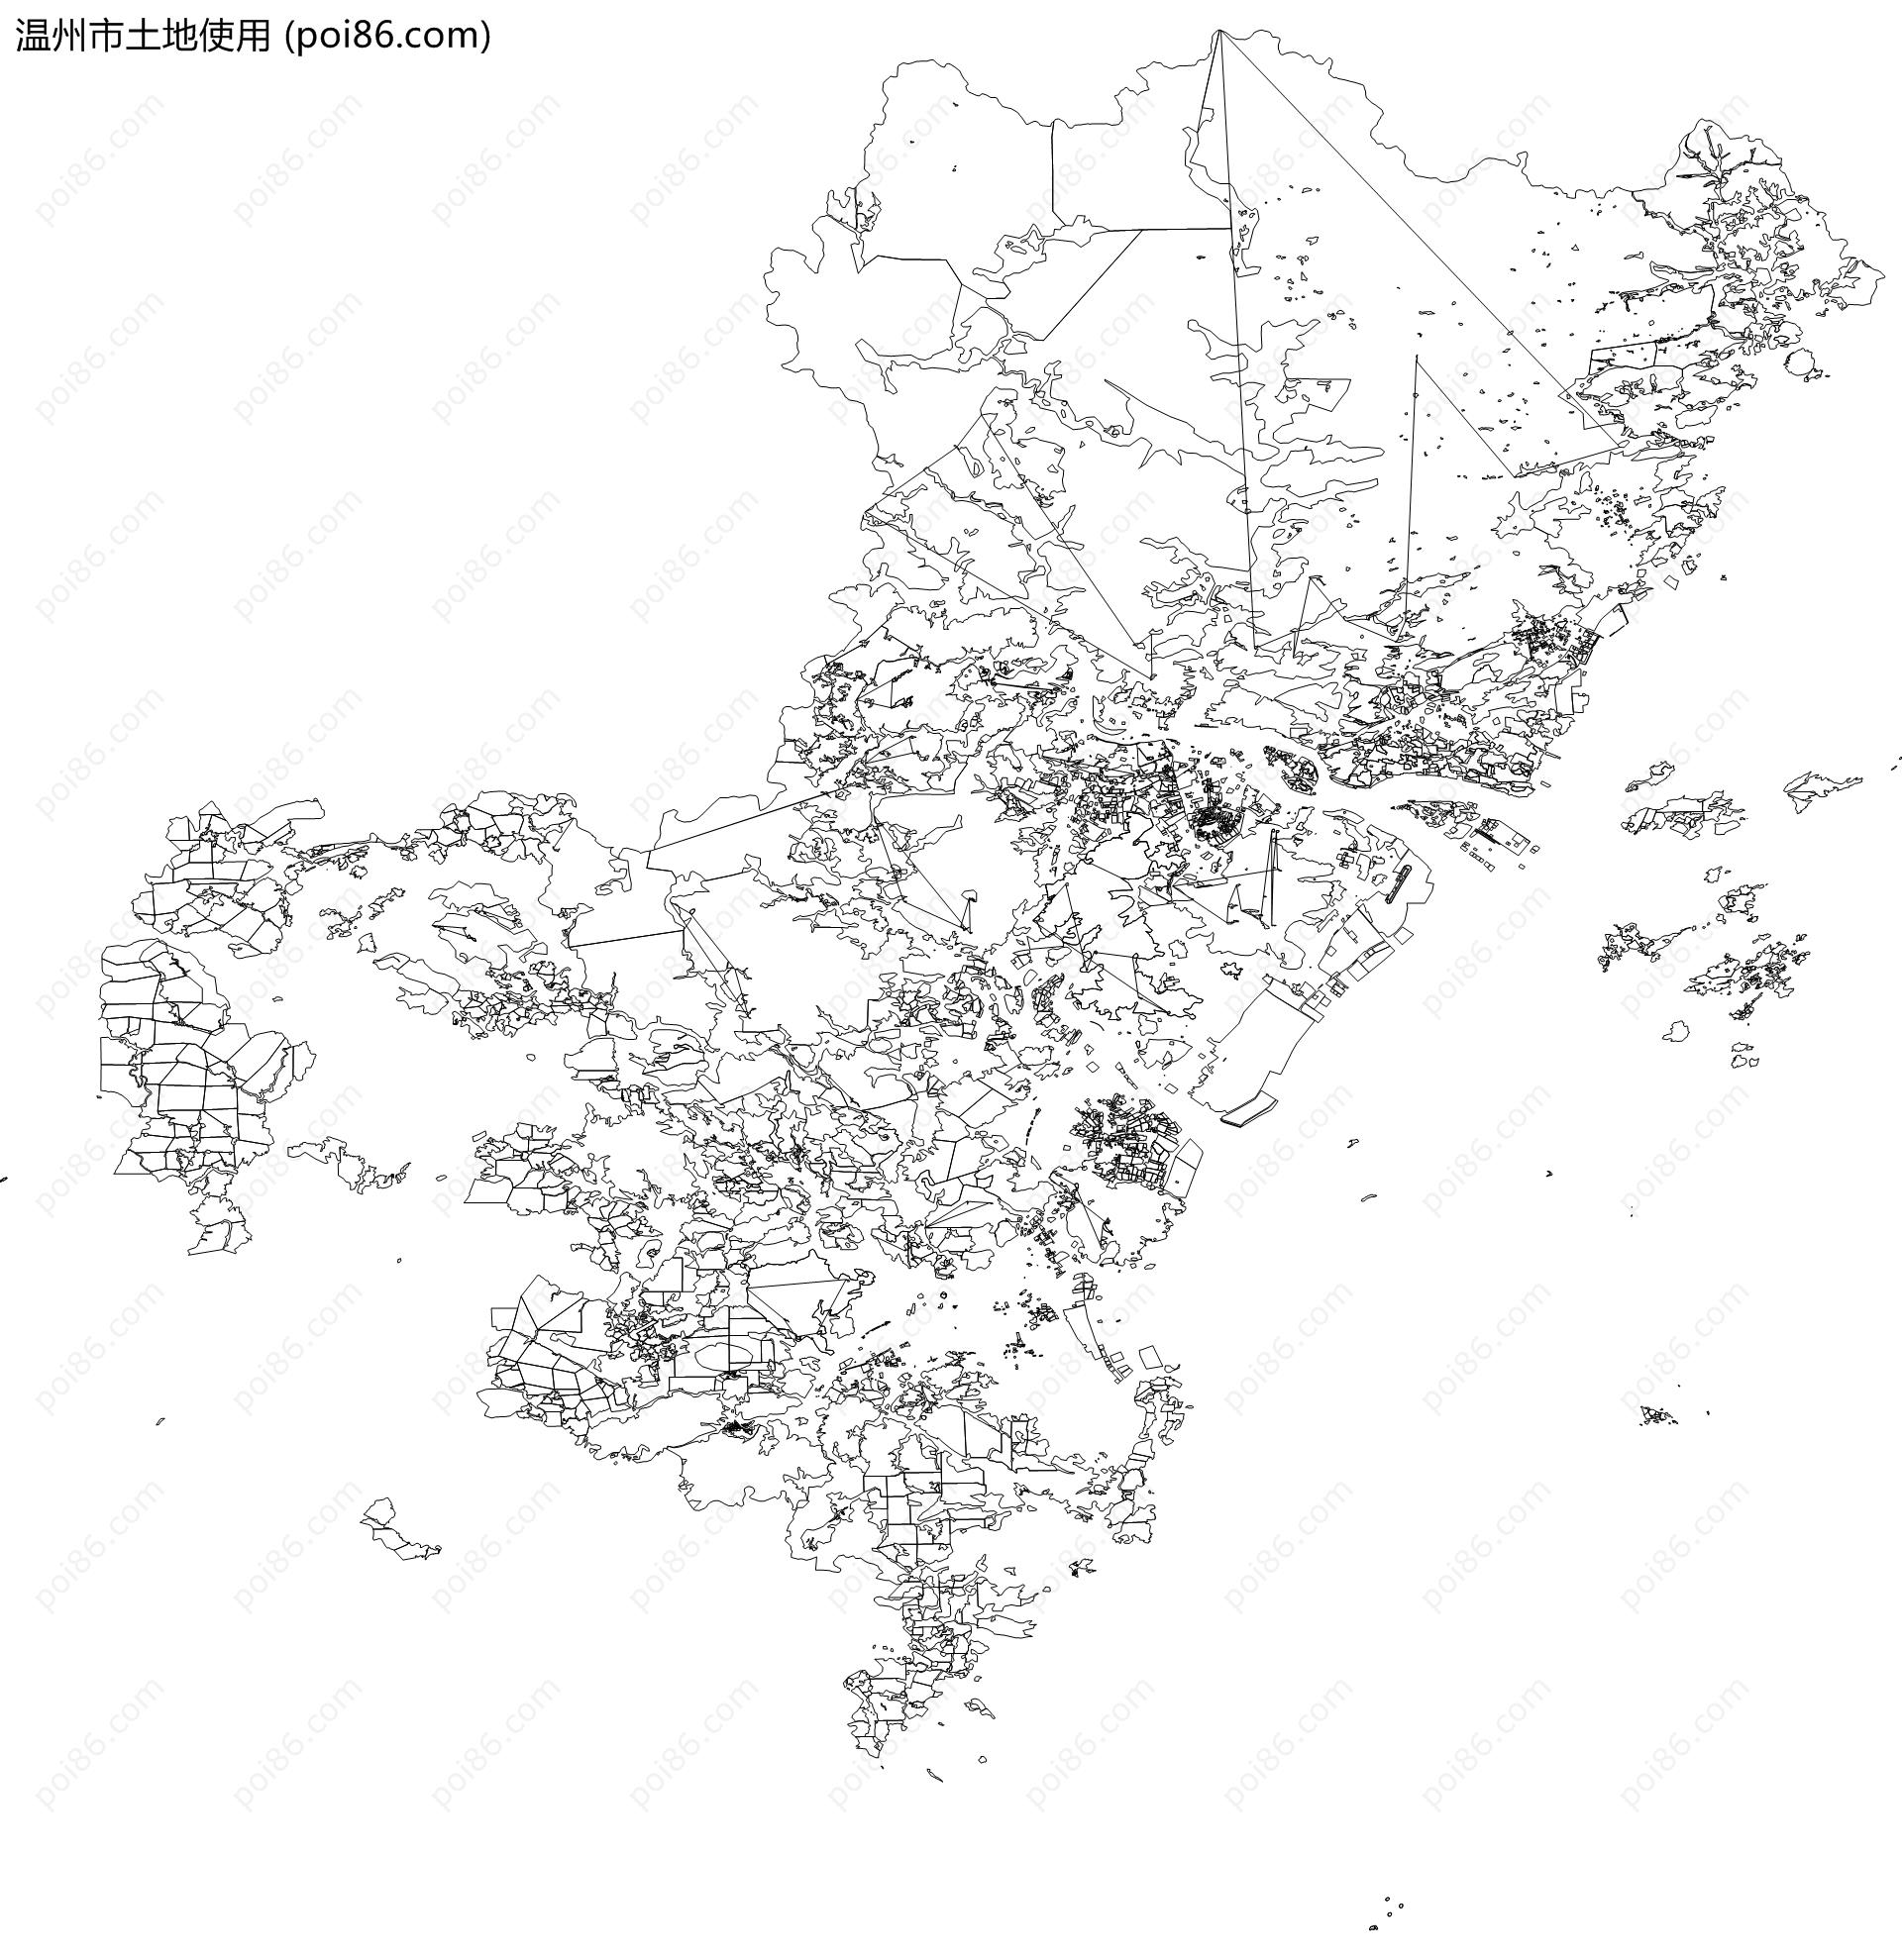 温州市土地使用地图